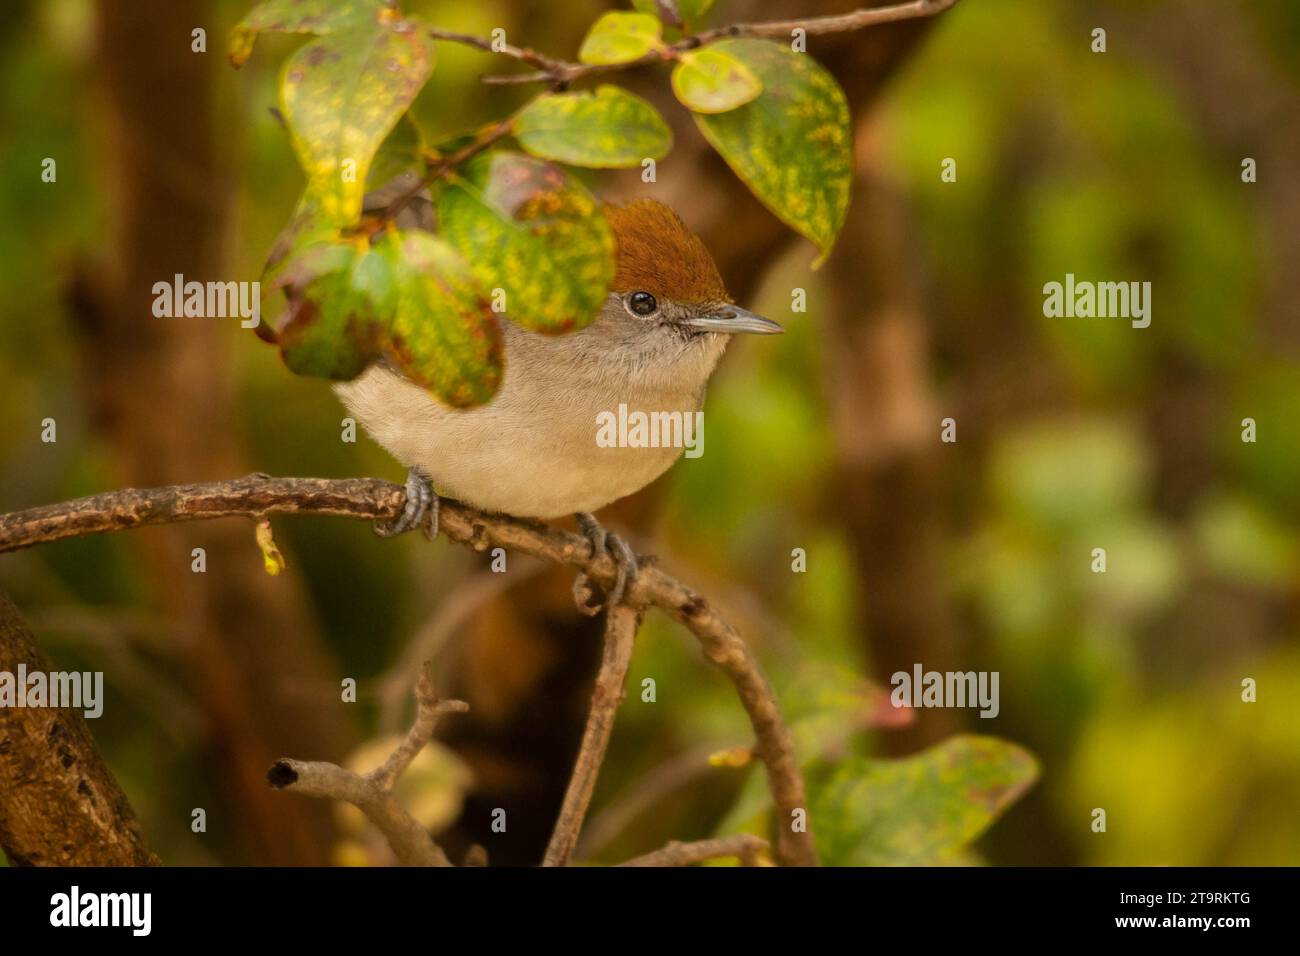 Photo d'un beau blackcap assis sur une branche et se cachant derrière quelques feuilles. Blackcap Bird perché sur Branch entouré de flore et de faune Banque D'Images